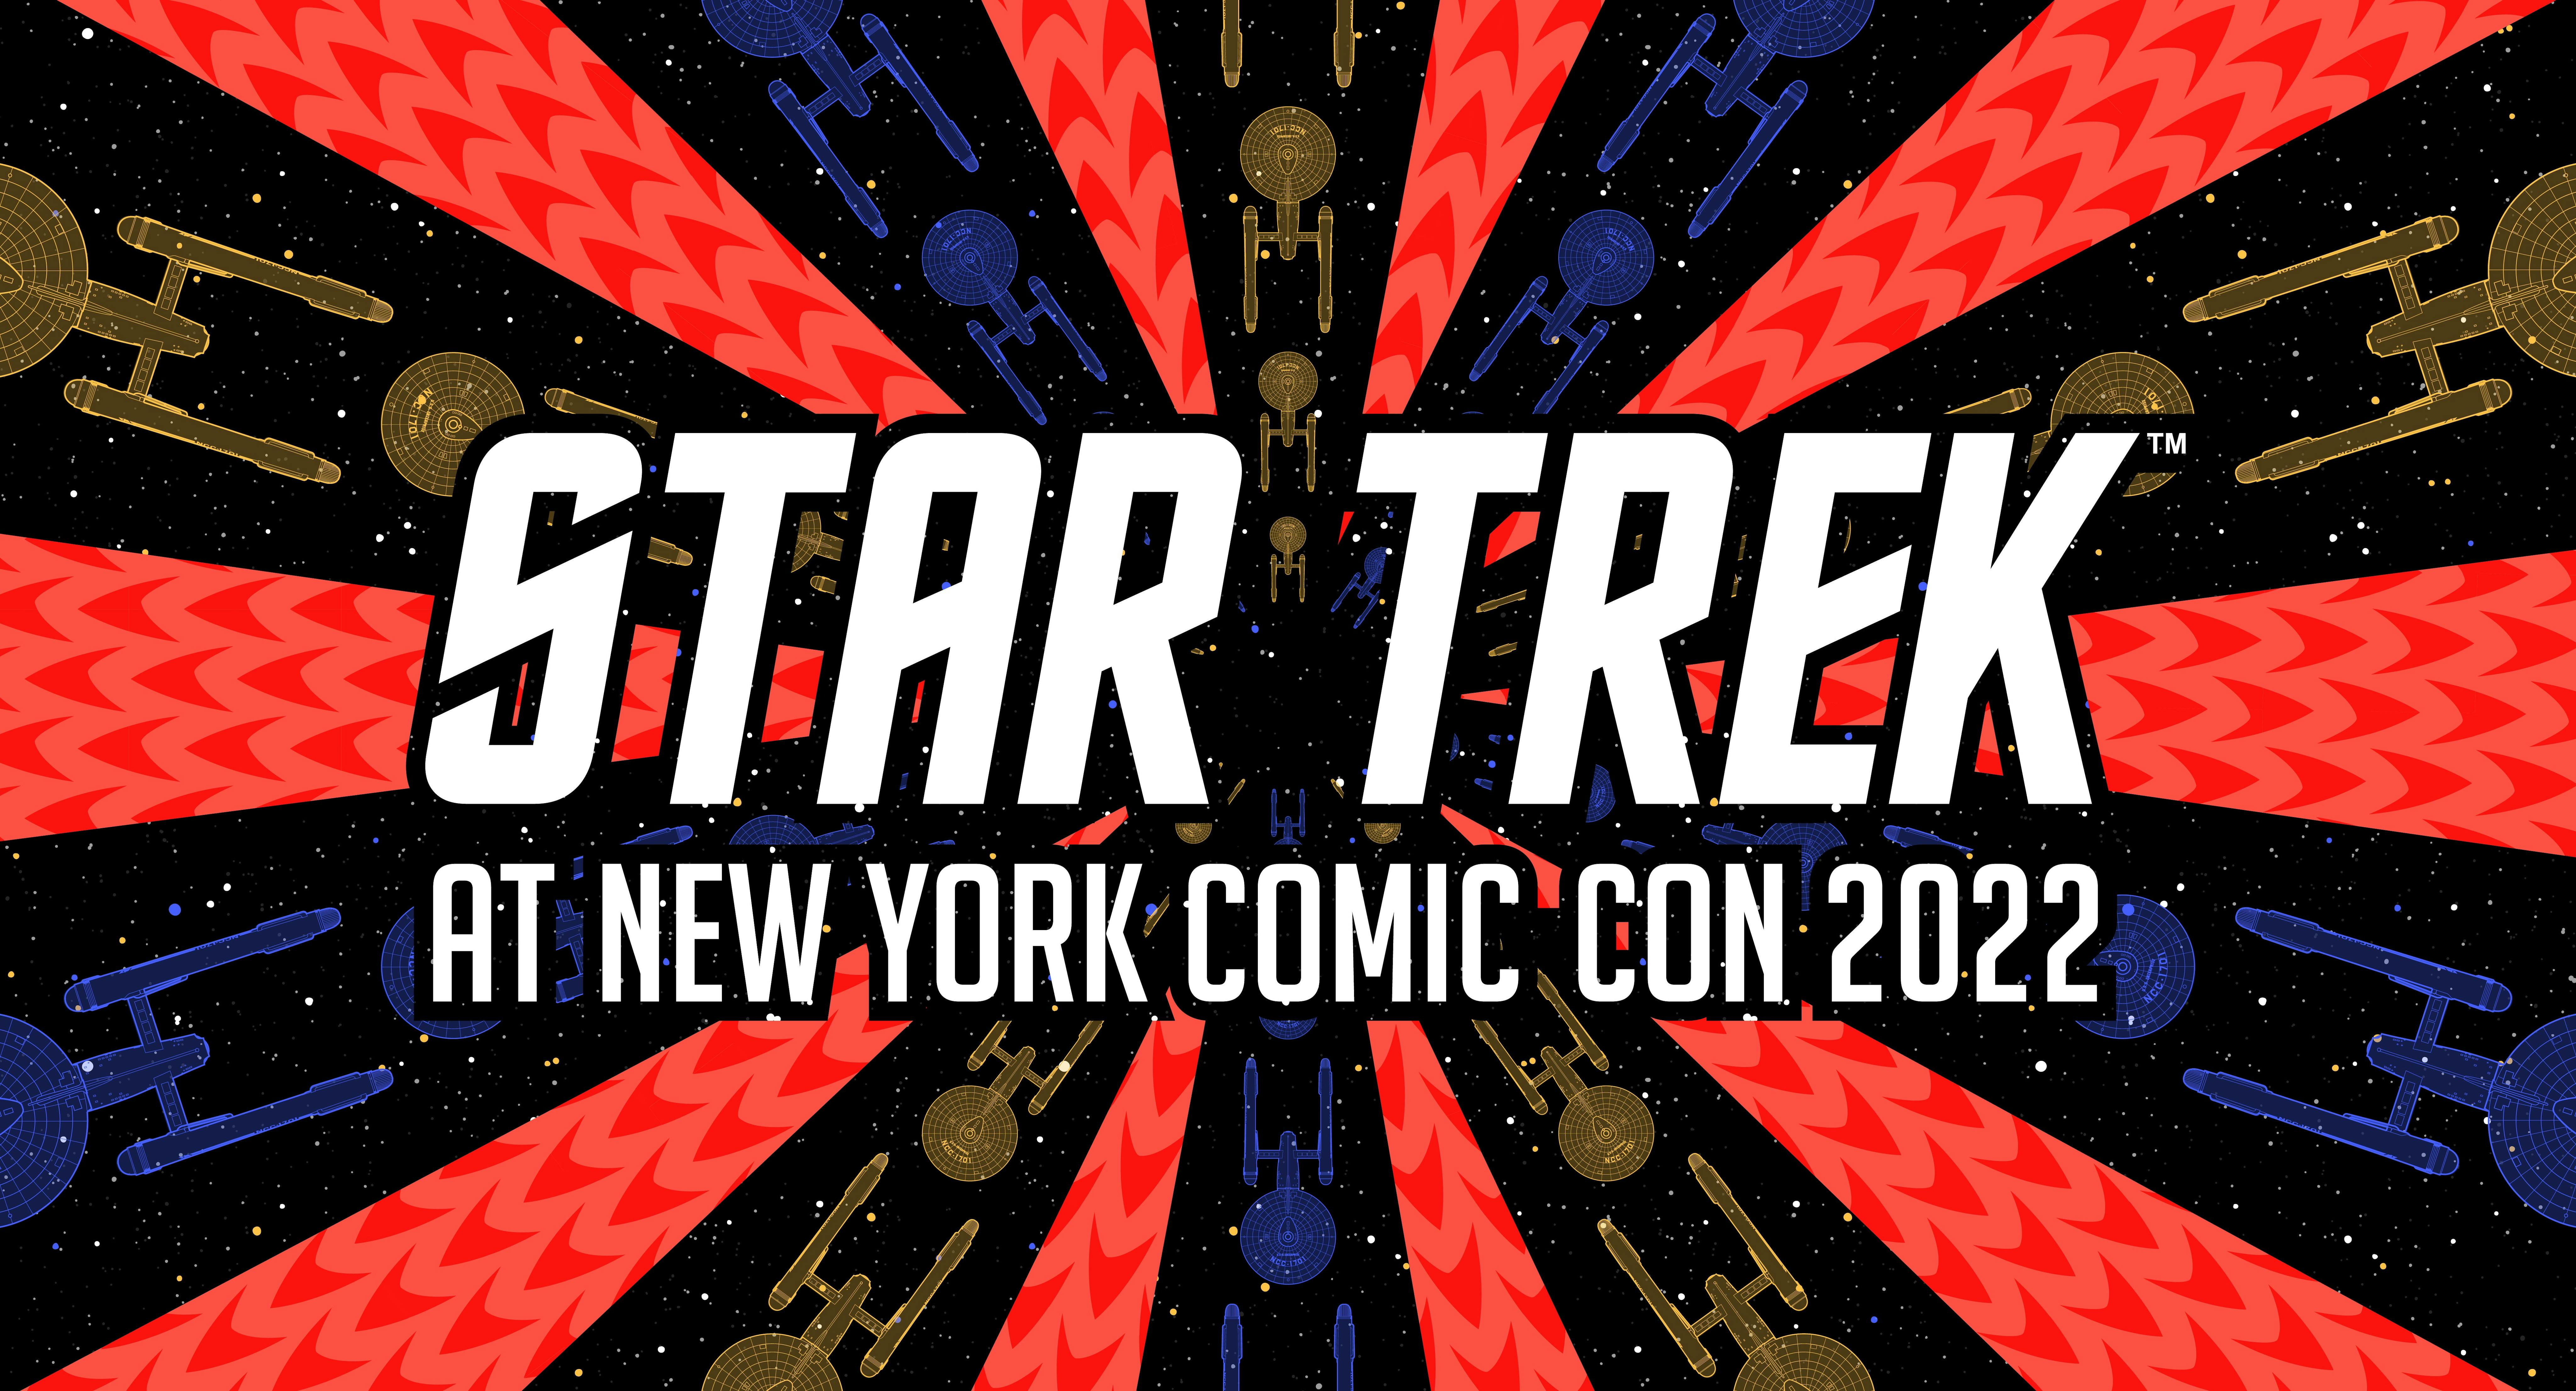 Illustrated art banner for Star Trek at New York Comic Con 2022